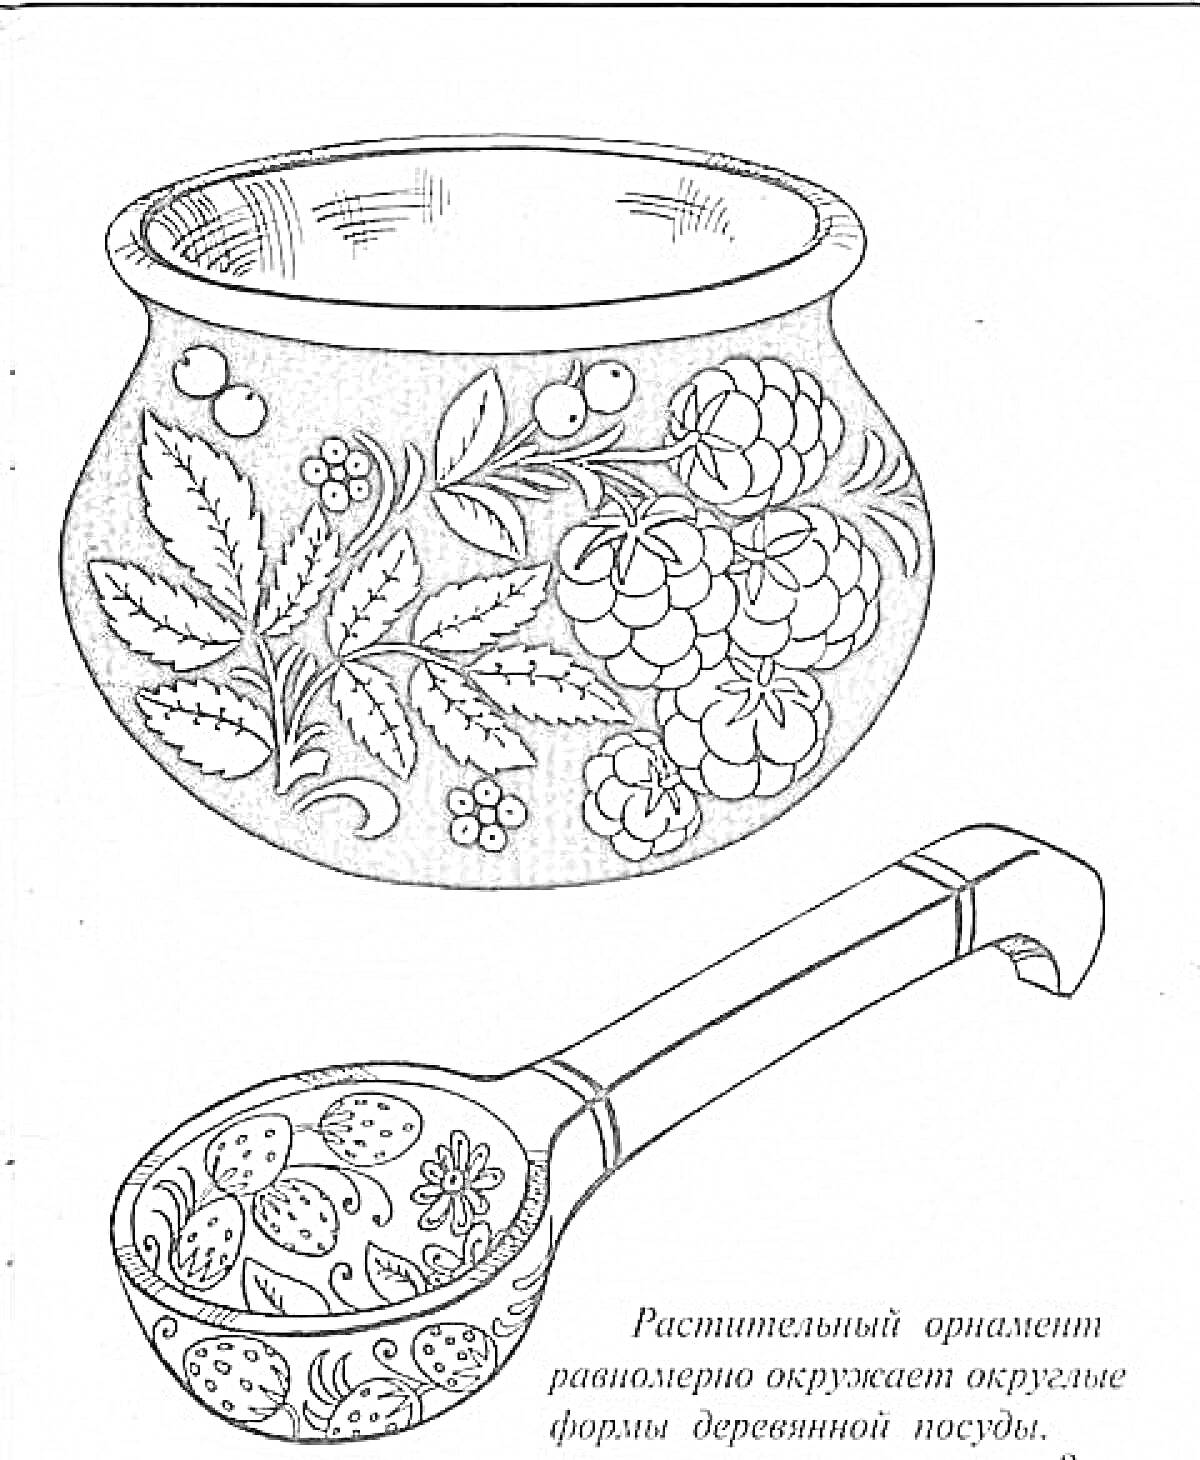 Горшок и ложка в стиле хохлома с растительным орнаментом